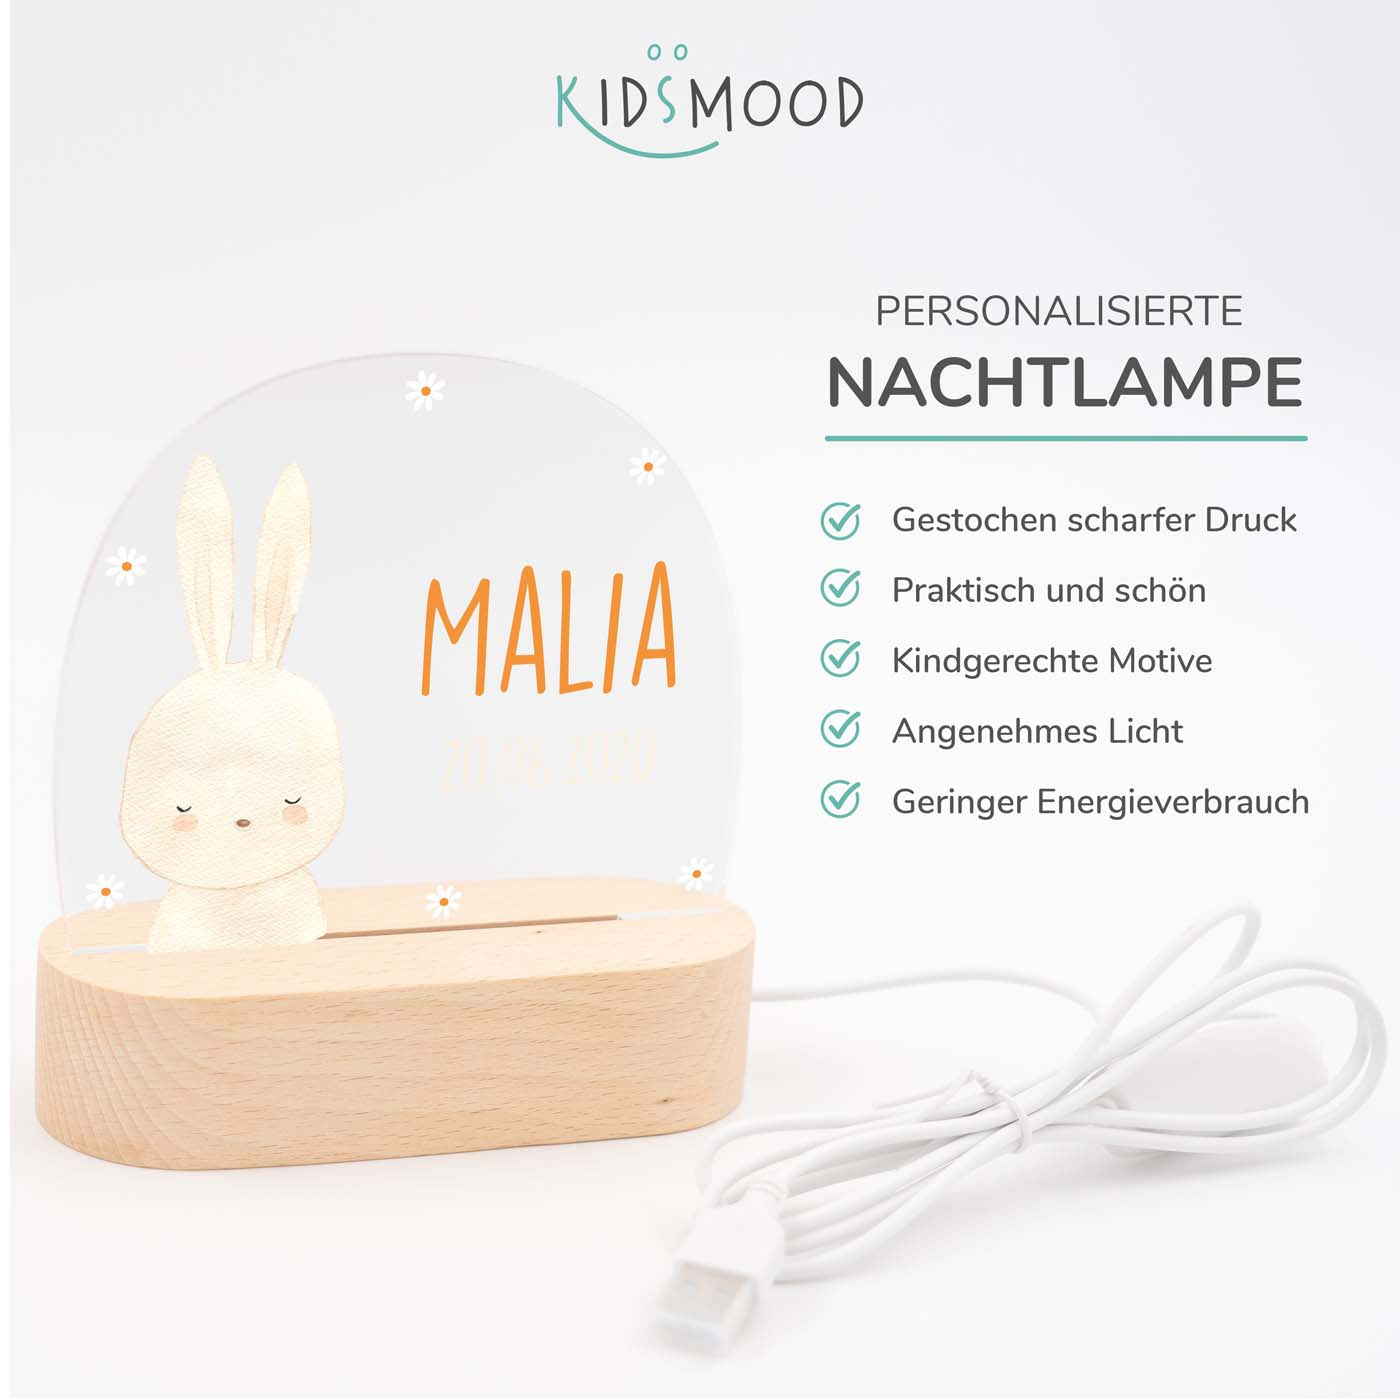 Personalisierte Nachtlampe für Kinder - Baby-Hase